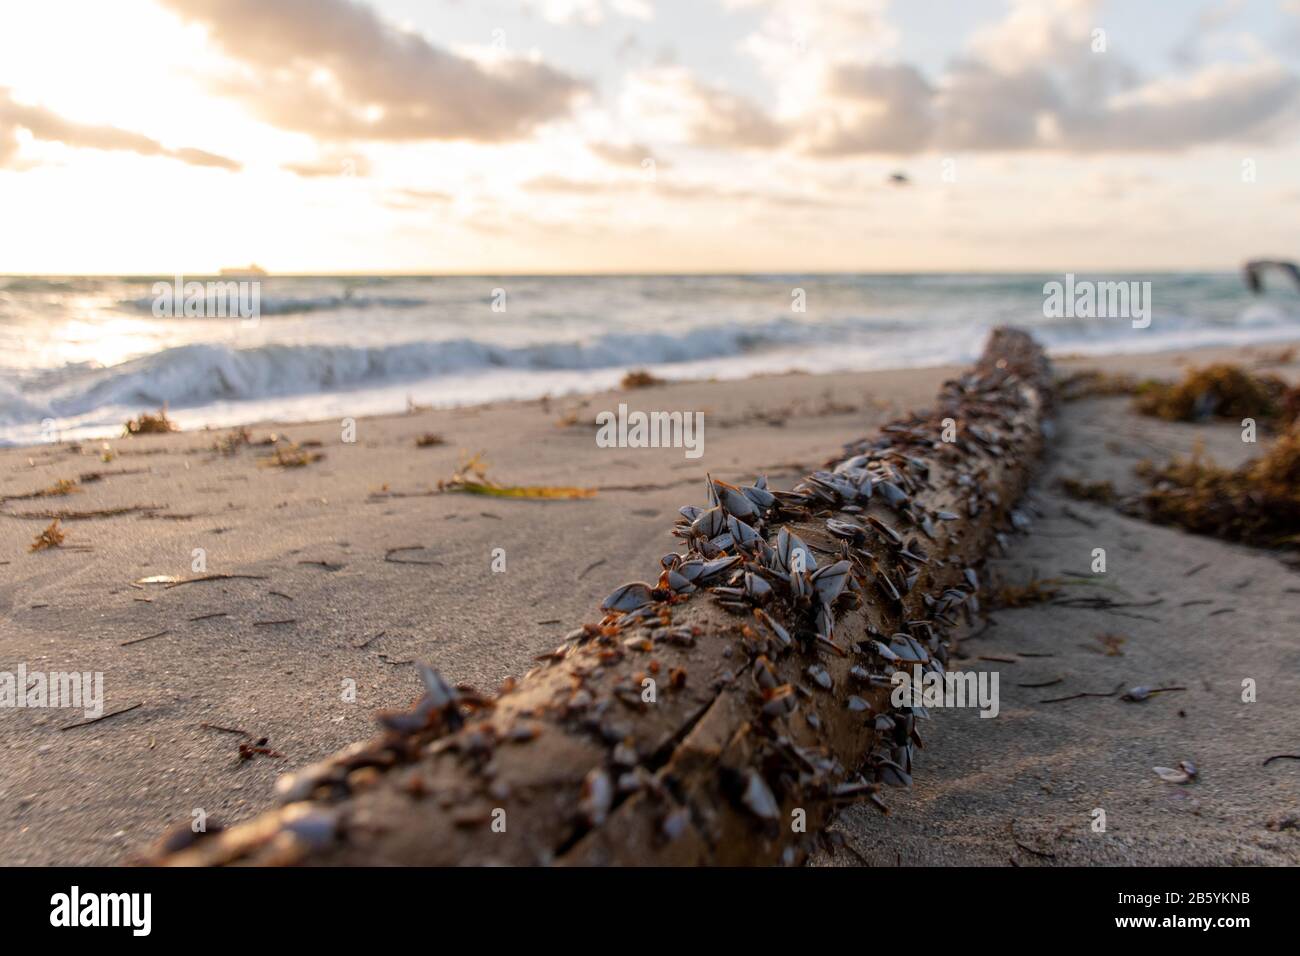 Meer gewaschene Holzklotze voller Meeresschutzschalen in einem Kühlen Morgensonnengang in Miami South Beach, Florida. Wind brachte einige hohe Wellen. Stockfoto